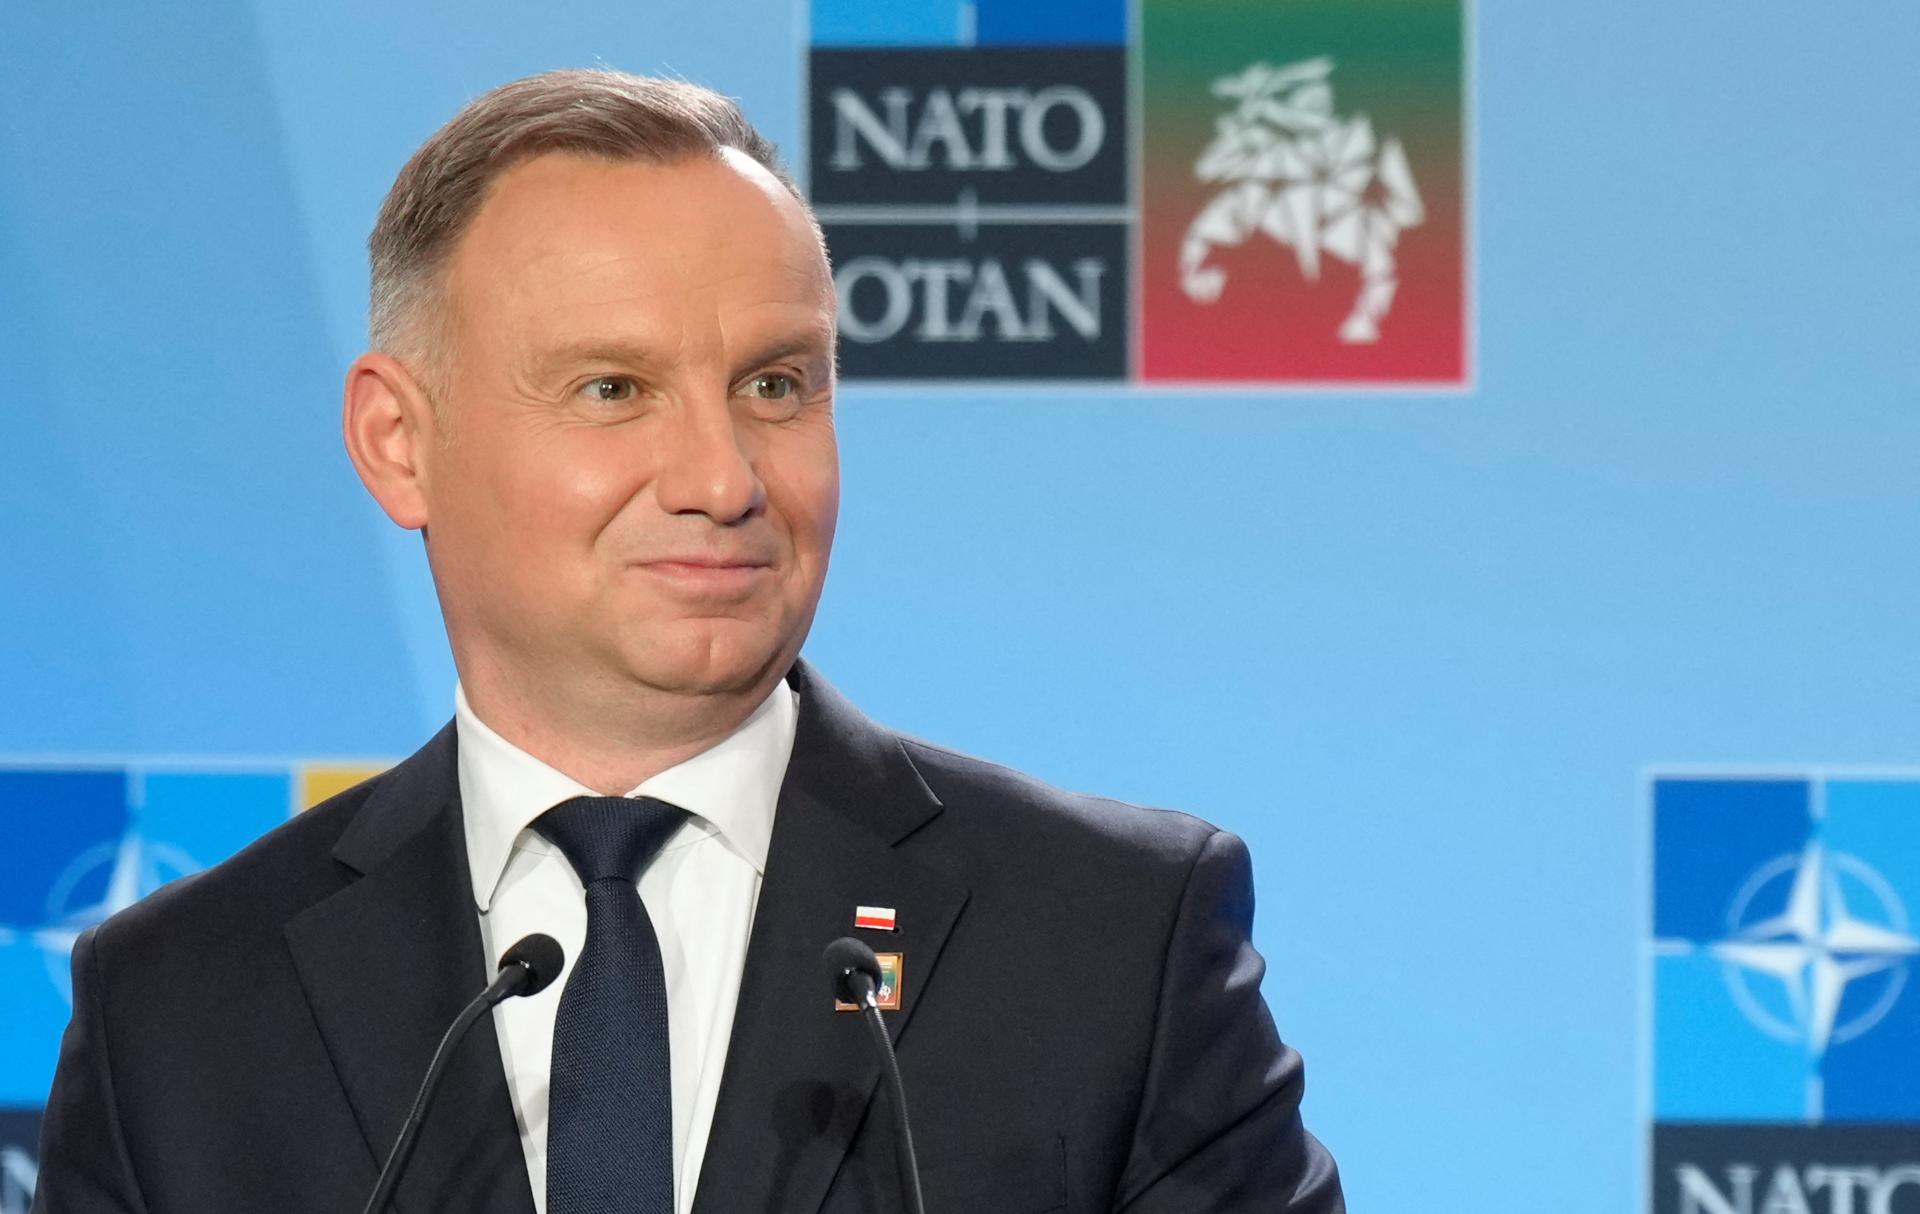 Poľský prezident Duda podpísal pozmenenú verziu zákona o ruskom vplyve, výbor bude mať menšiu moc